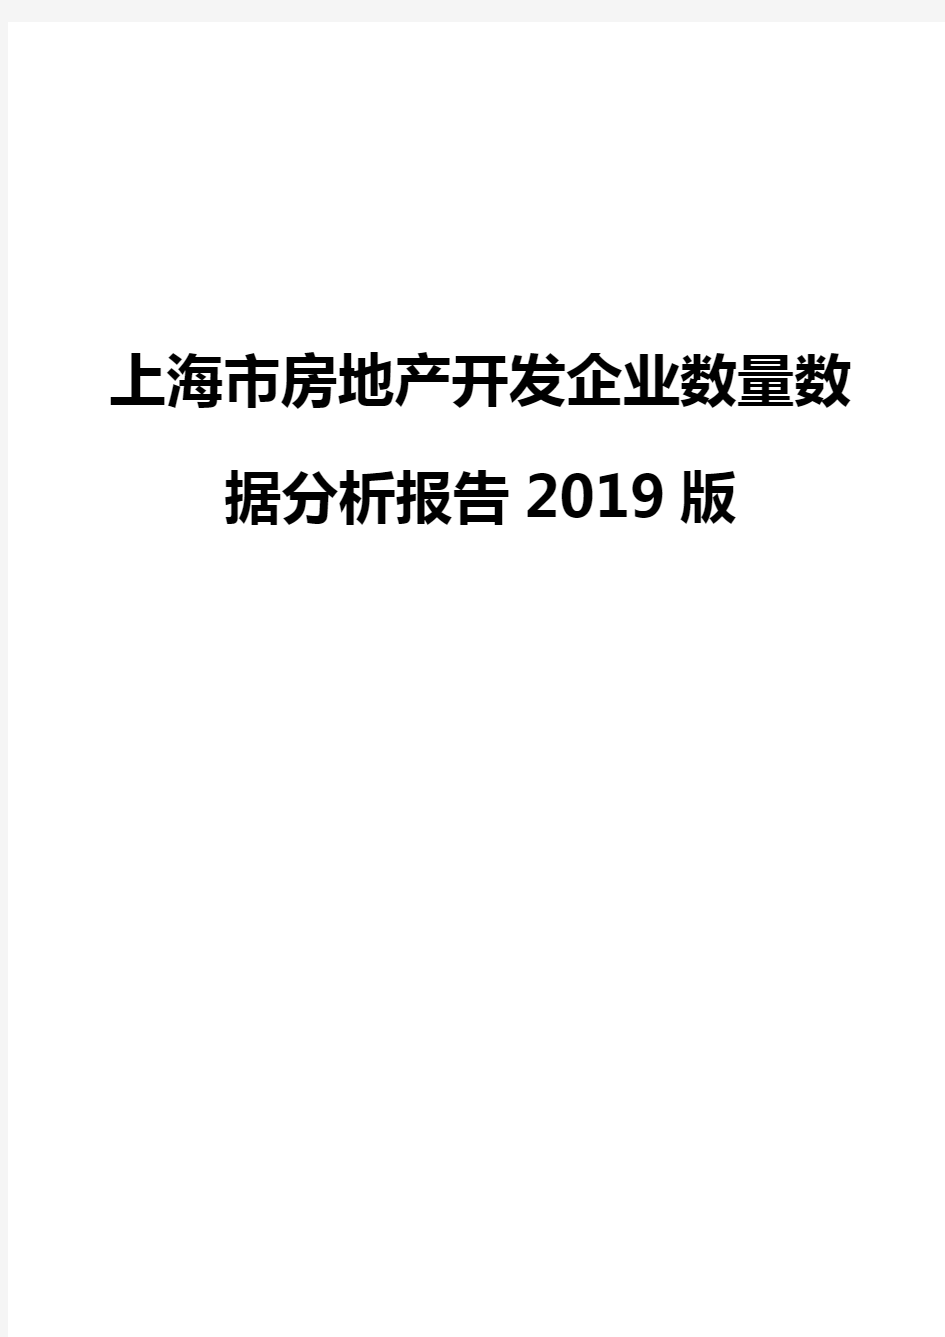 上海市房地产开发企业数量数据分析报告2019版